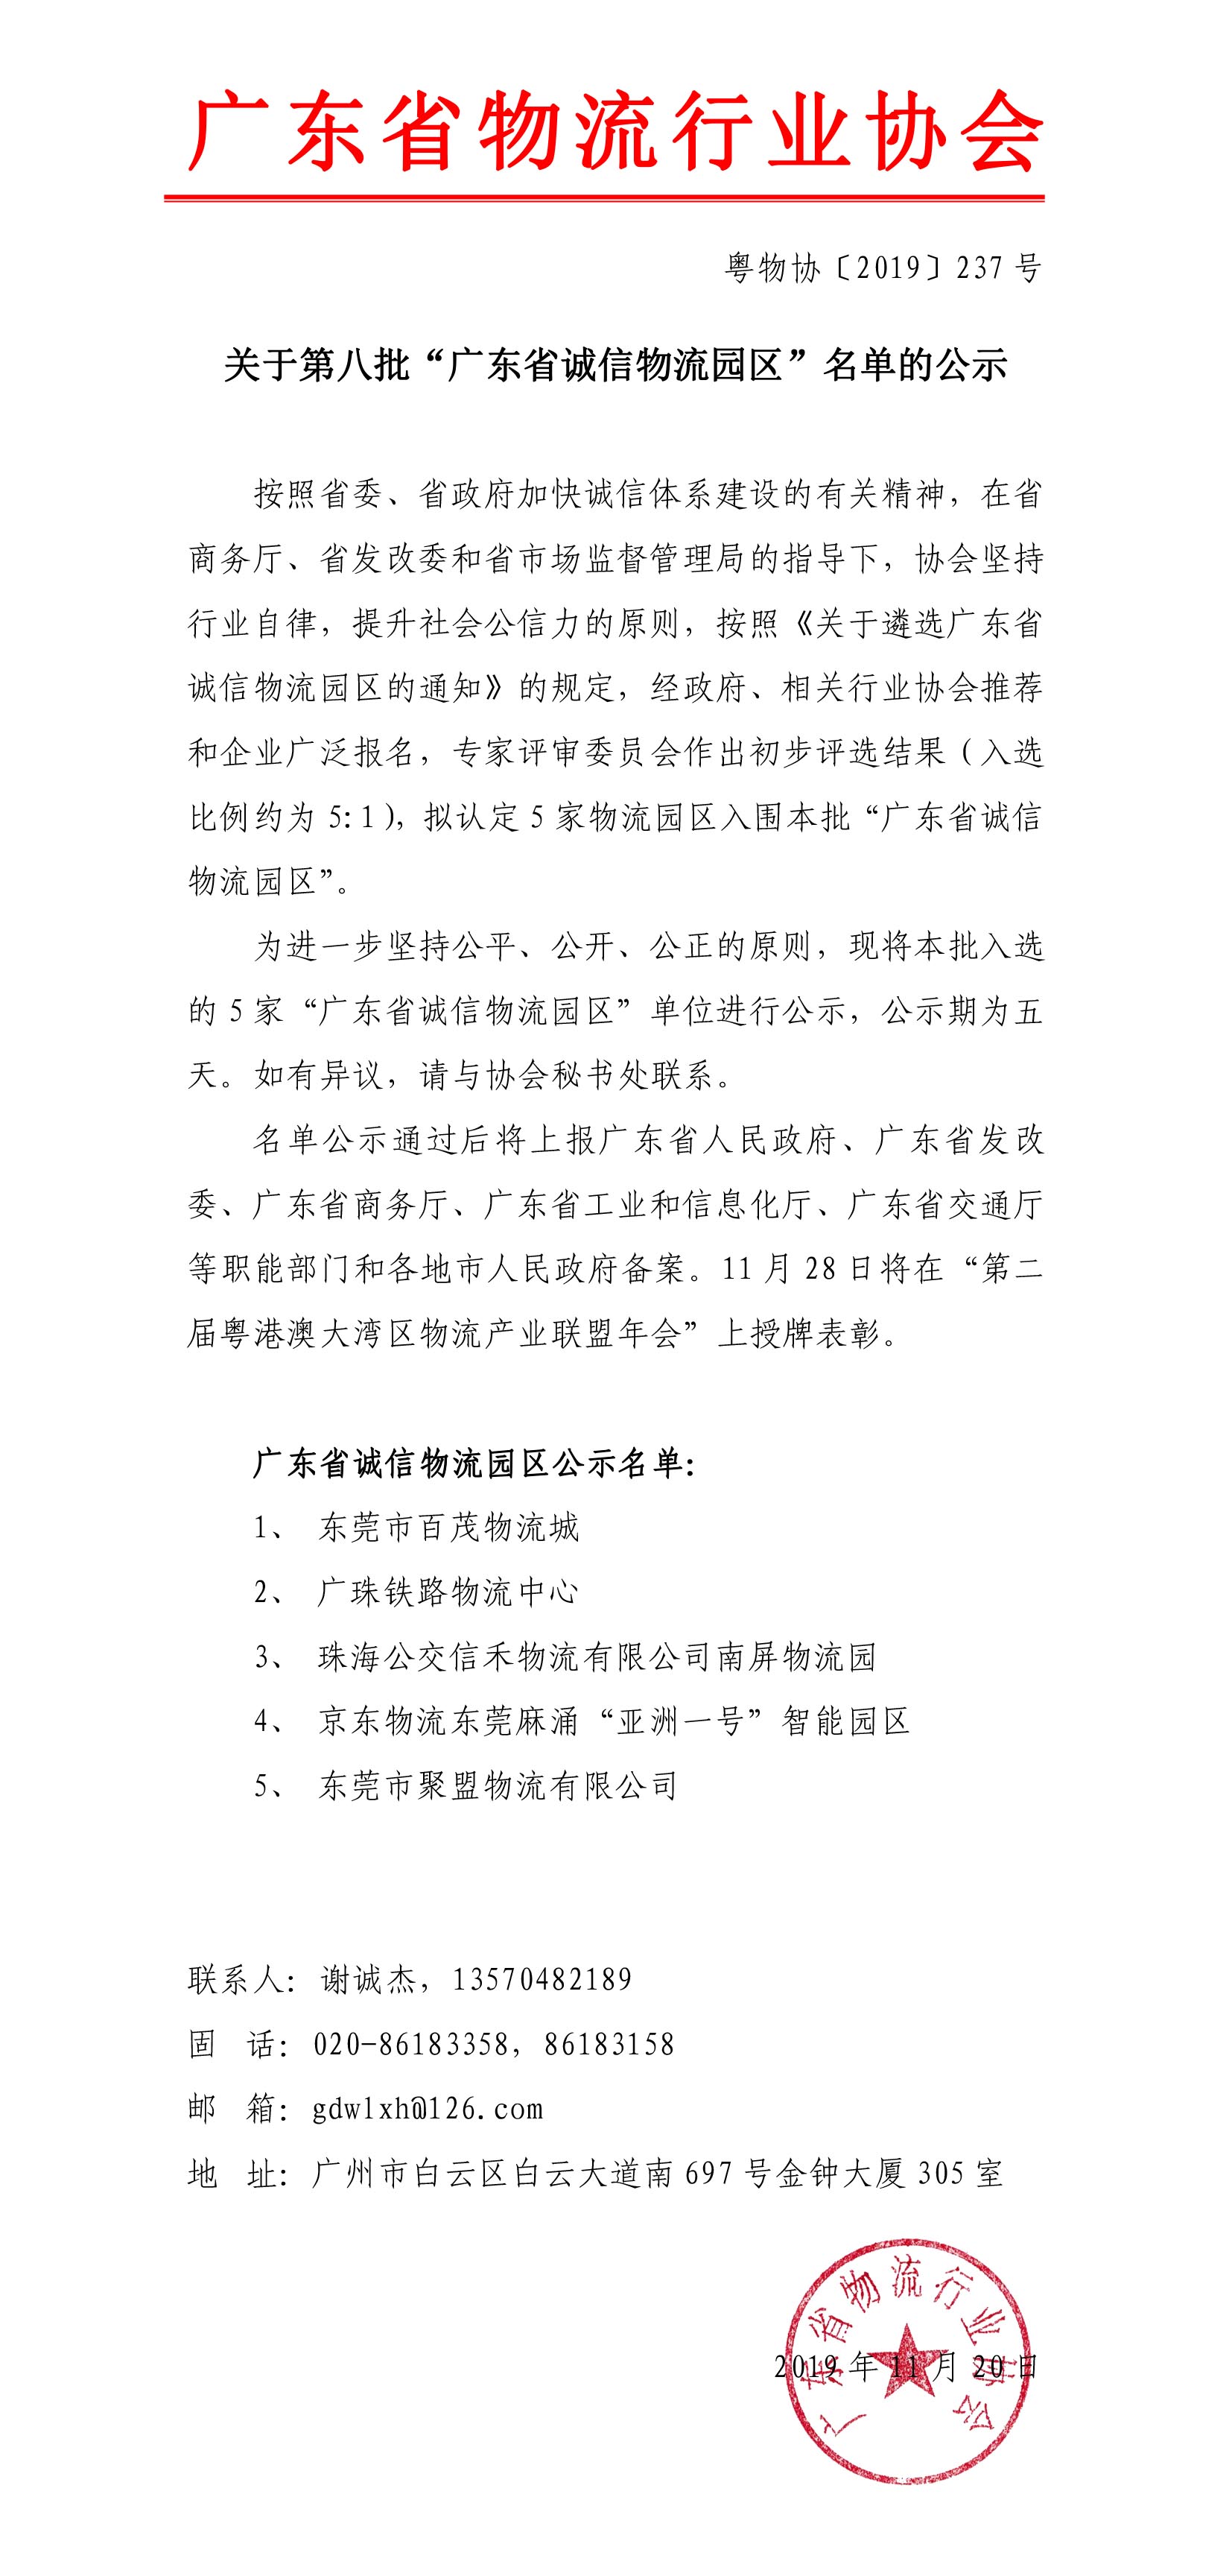 关于第八批“广东省诚信物流园区”名单的公示191120-1.jpg